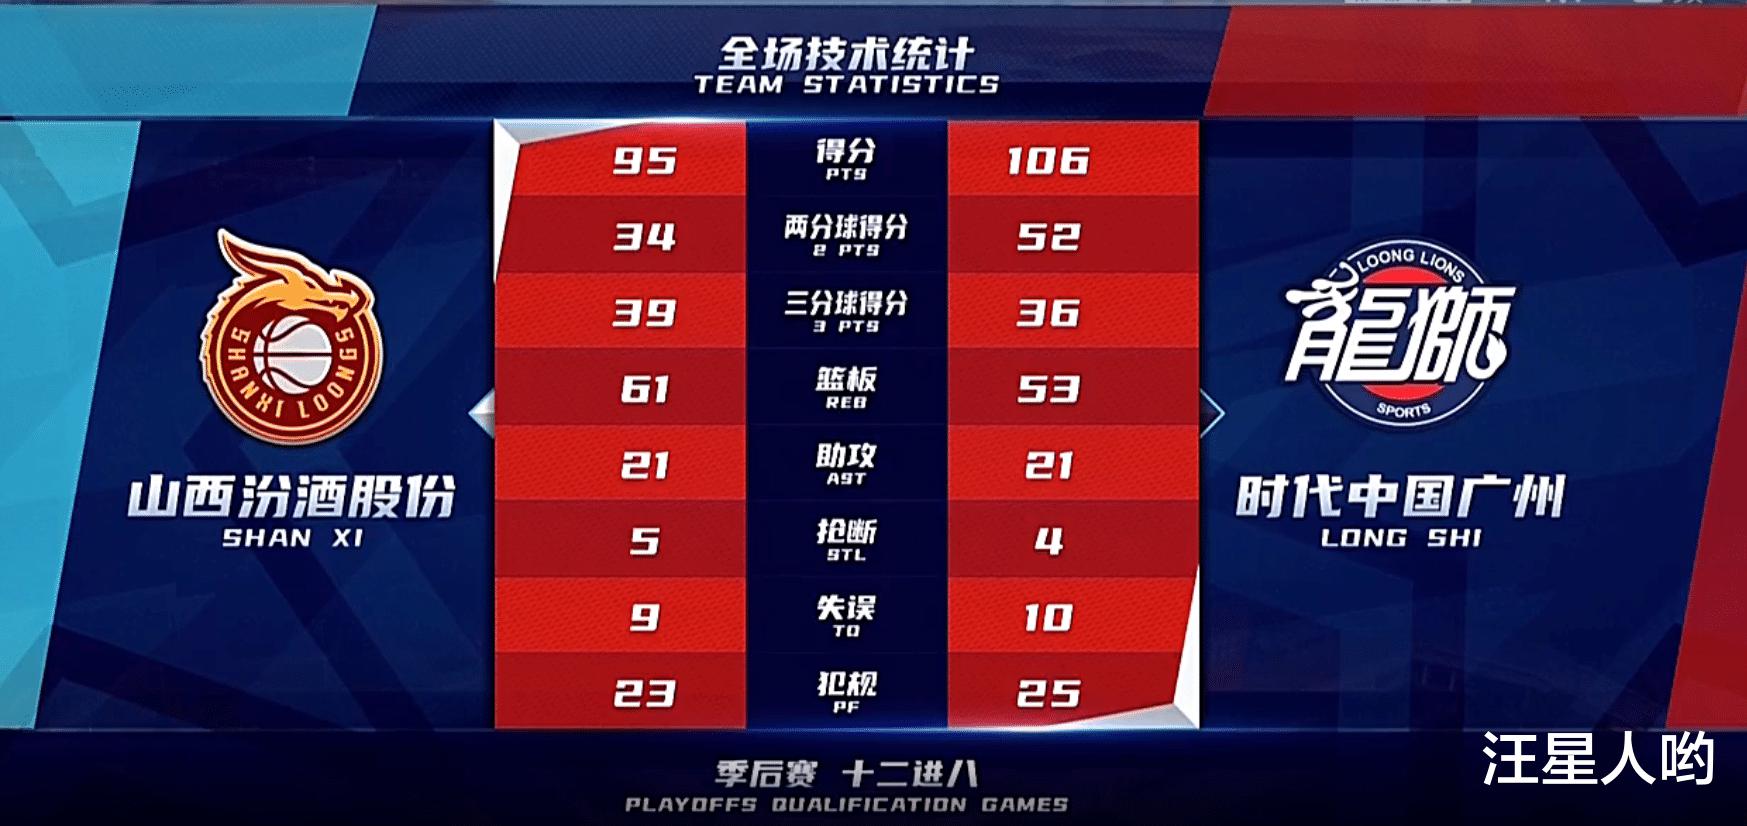 106-95! Đội bóng rổ nam Quảng Châu đã đảo ngược rất nhiều. Trong 5 phút cuối cùng, nó đã lật và kết thúc 2 bản ghi xấu hổ (5)